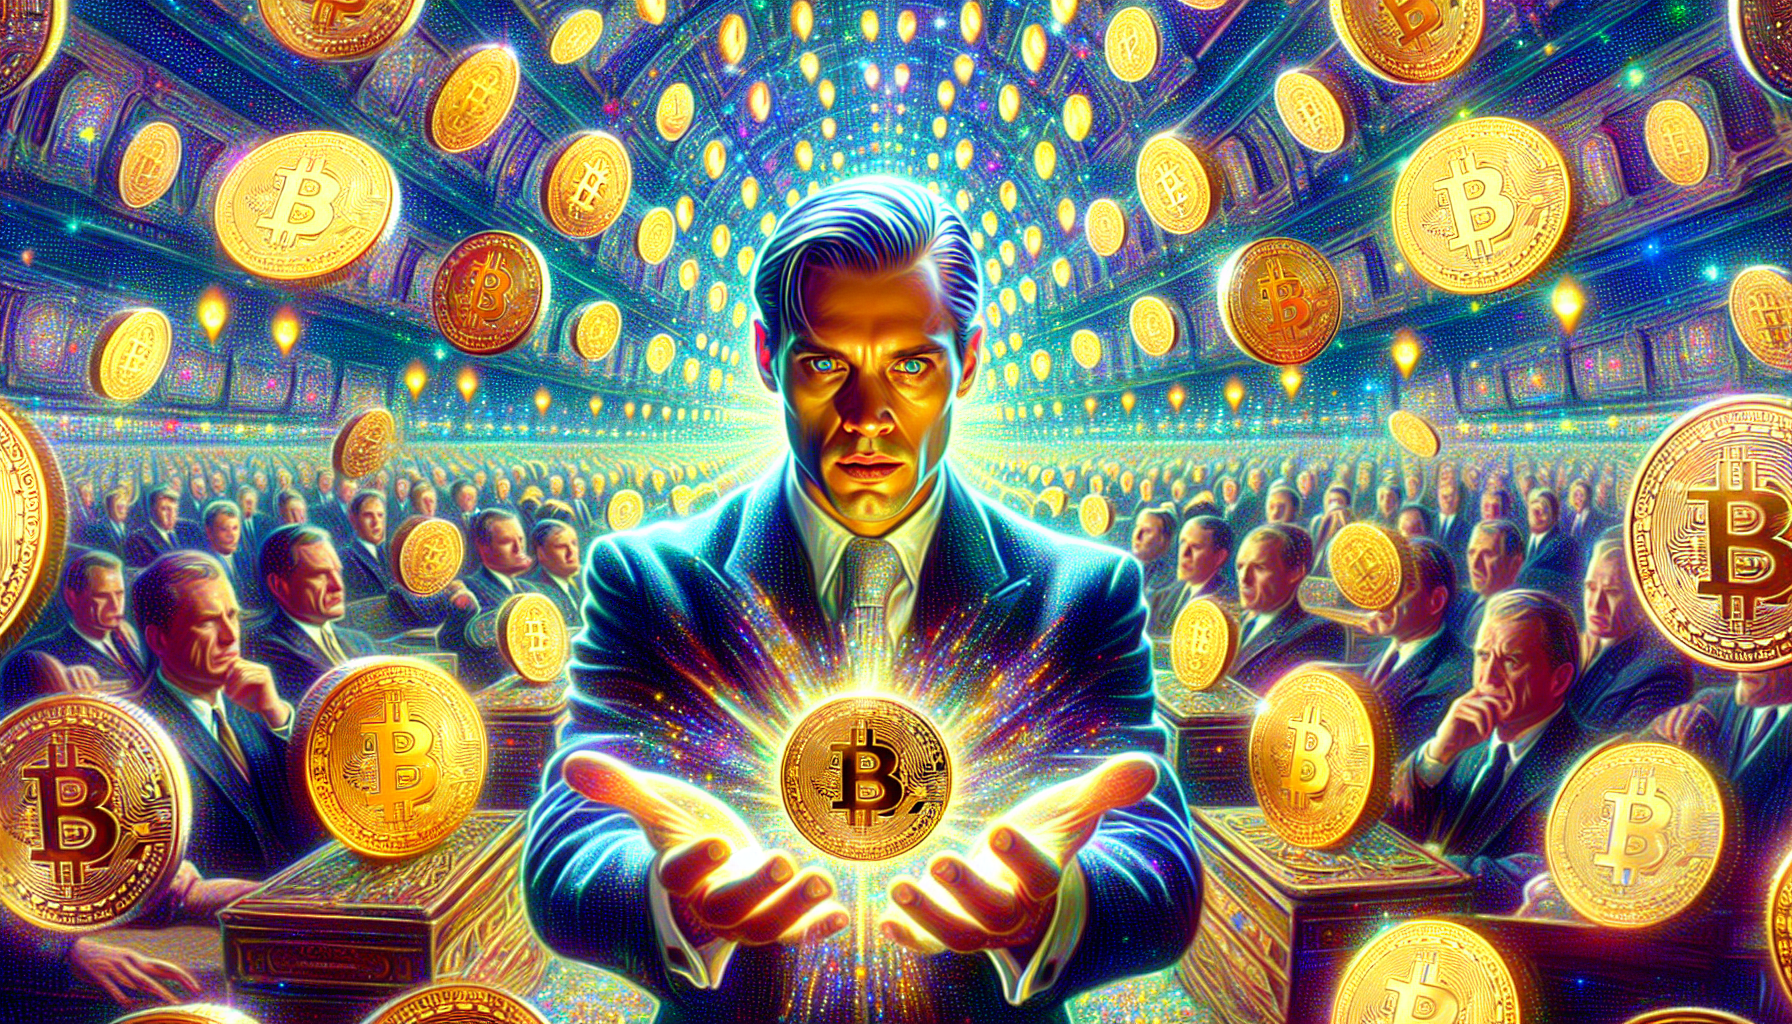 Mężczyzna trzymający w dłoniach Bitcoina, obserwowany przez tłum. W tle monety BTC